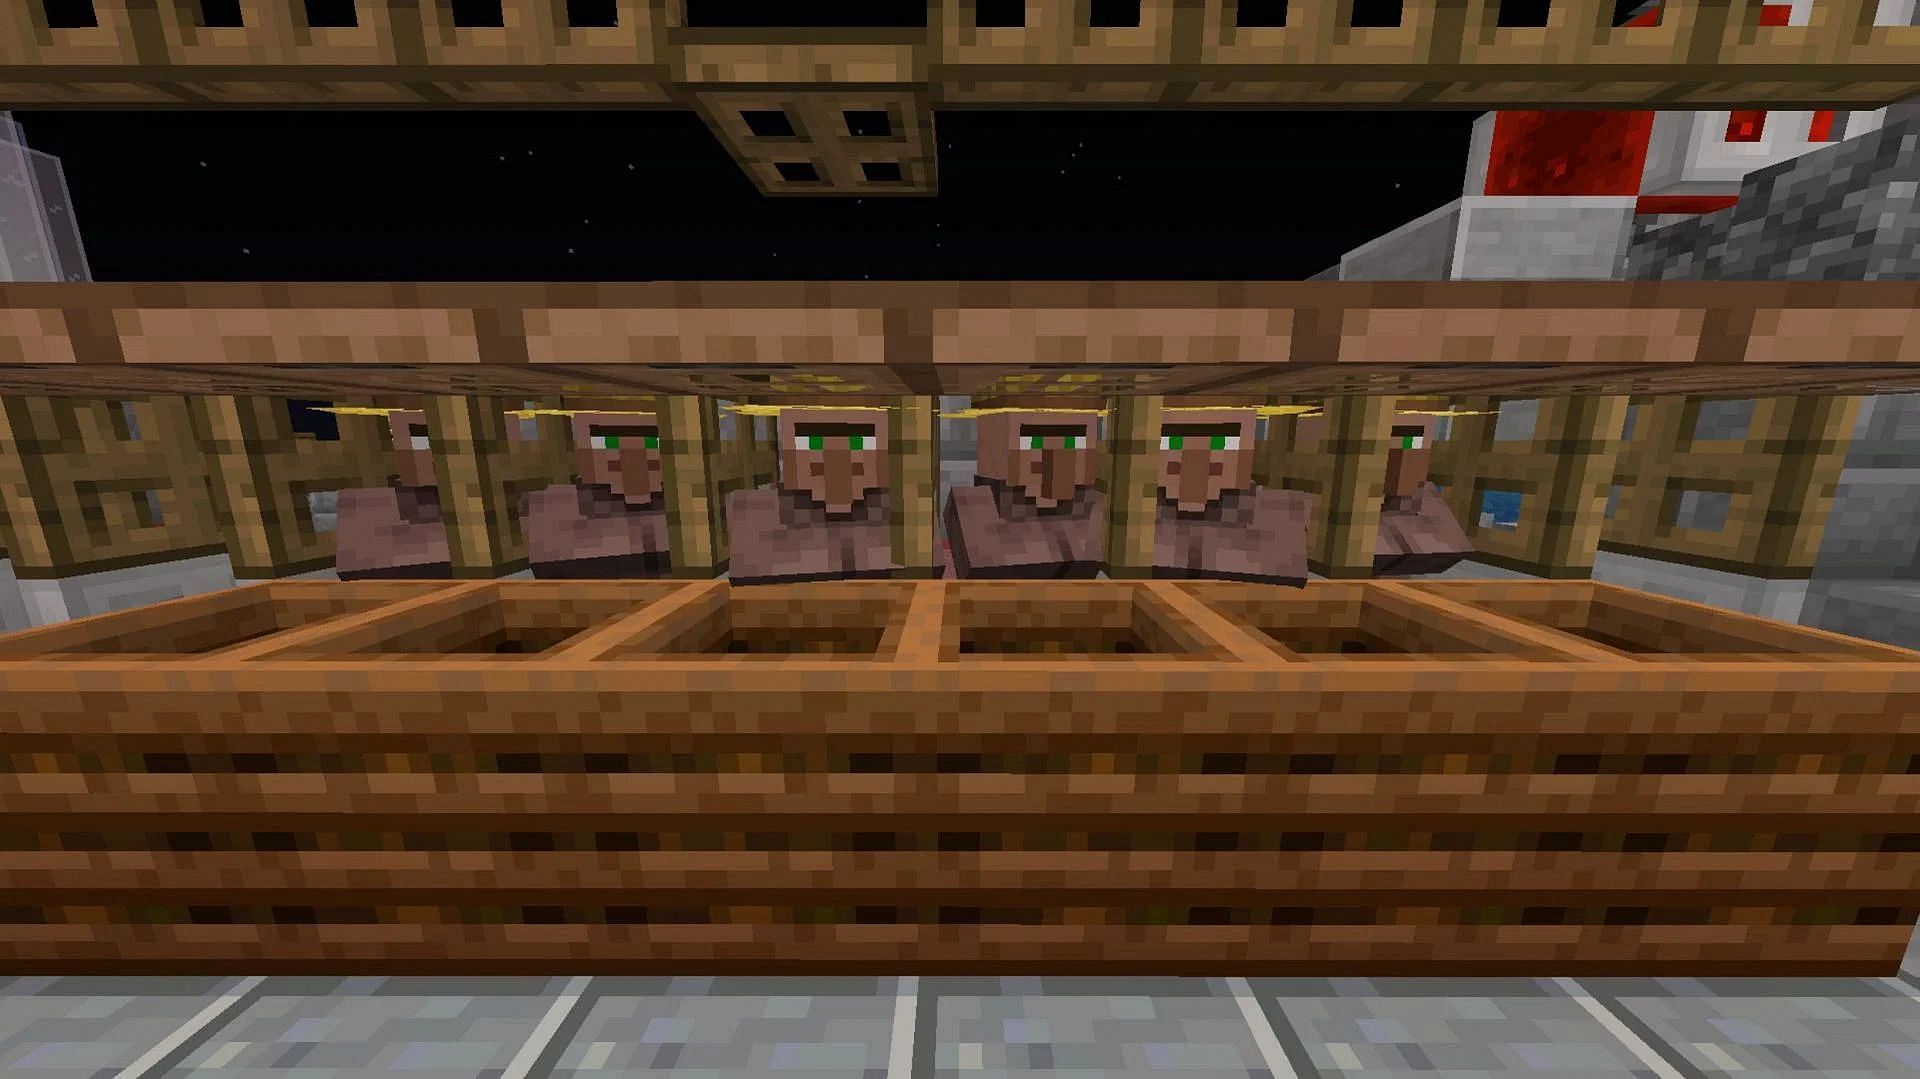 Minecraft villager trading hall designs